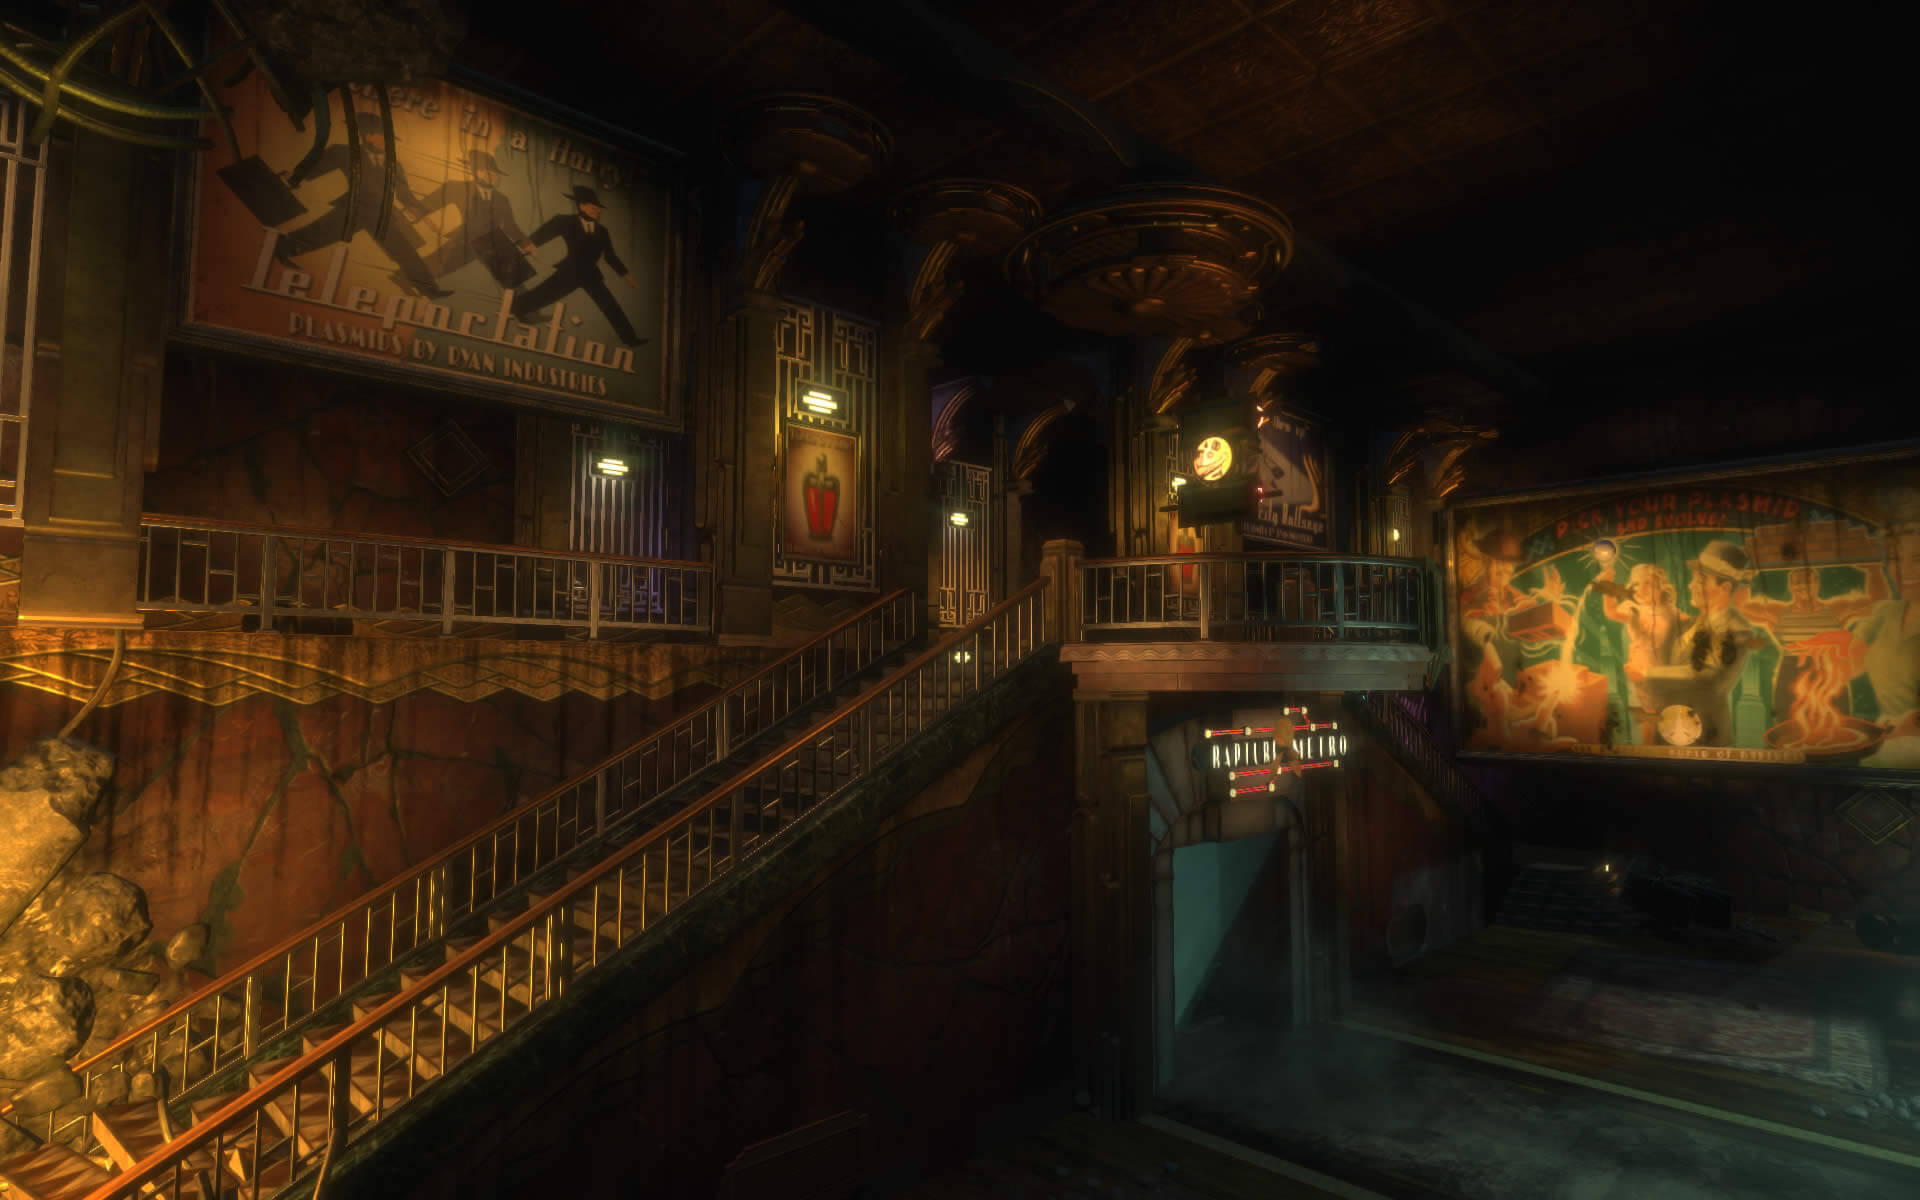 Bioshock Remastered (Bildrechte: Feral Interactive)